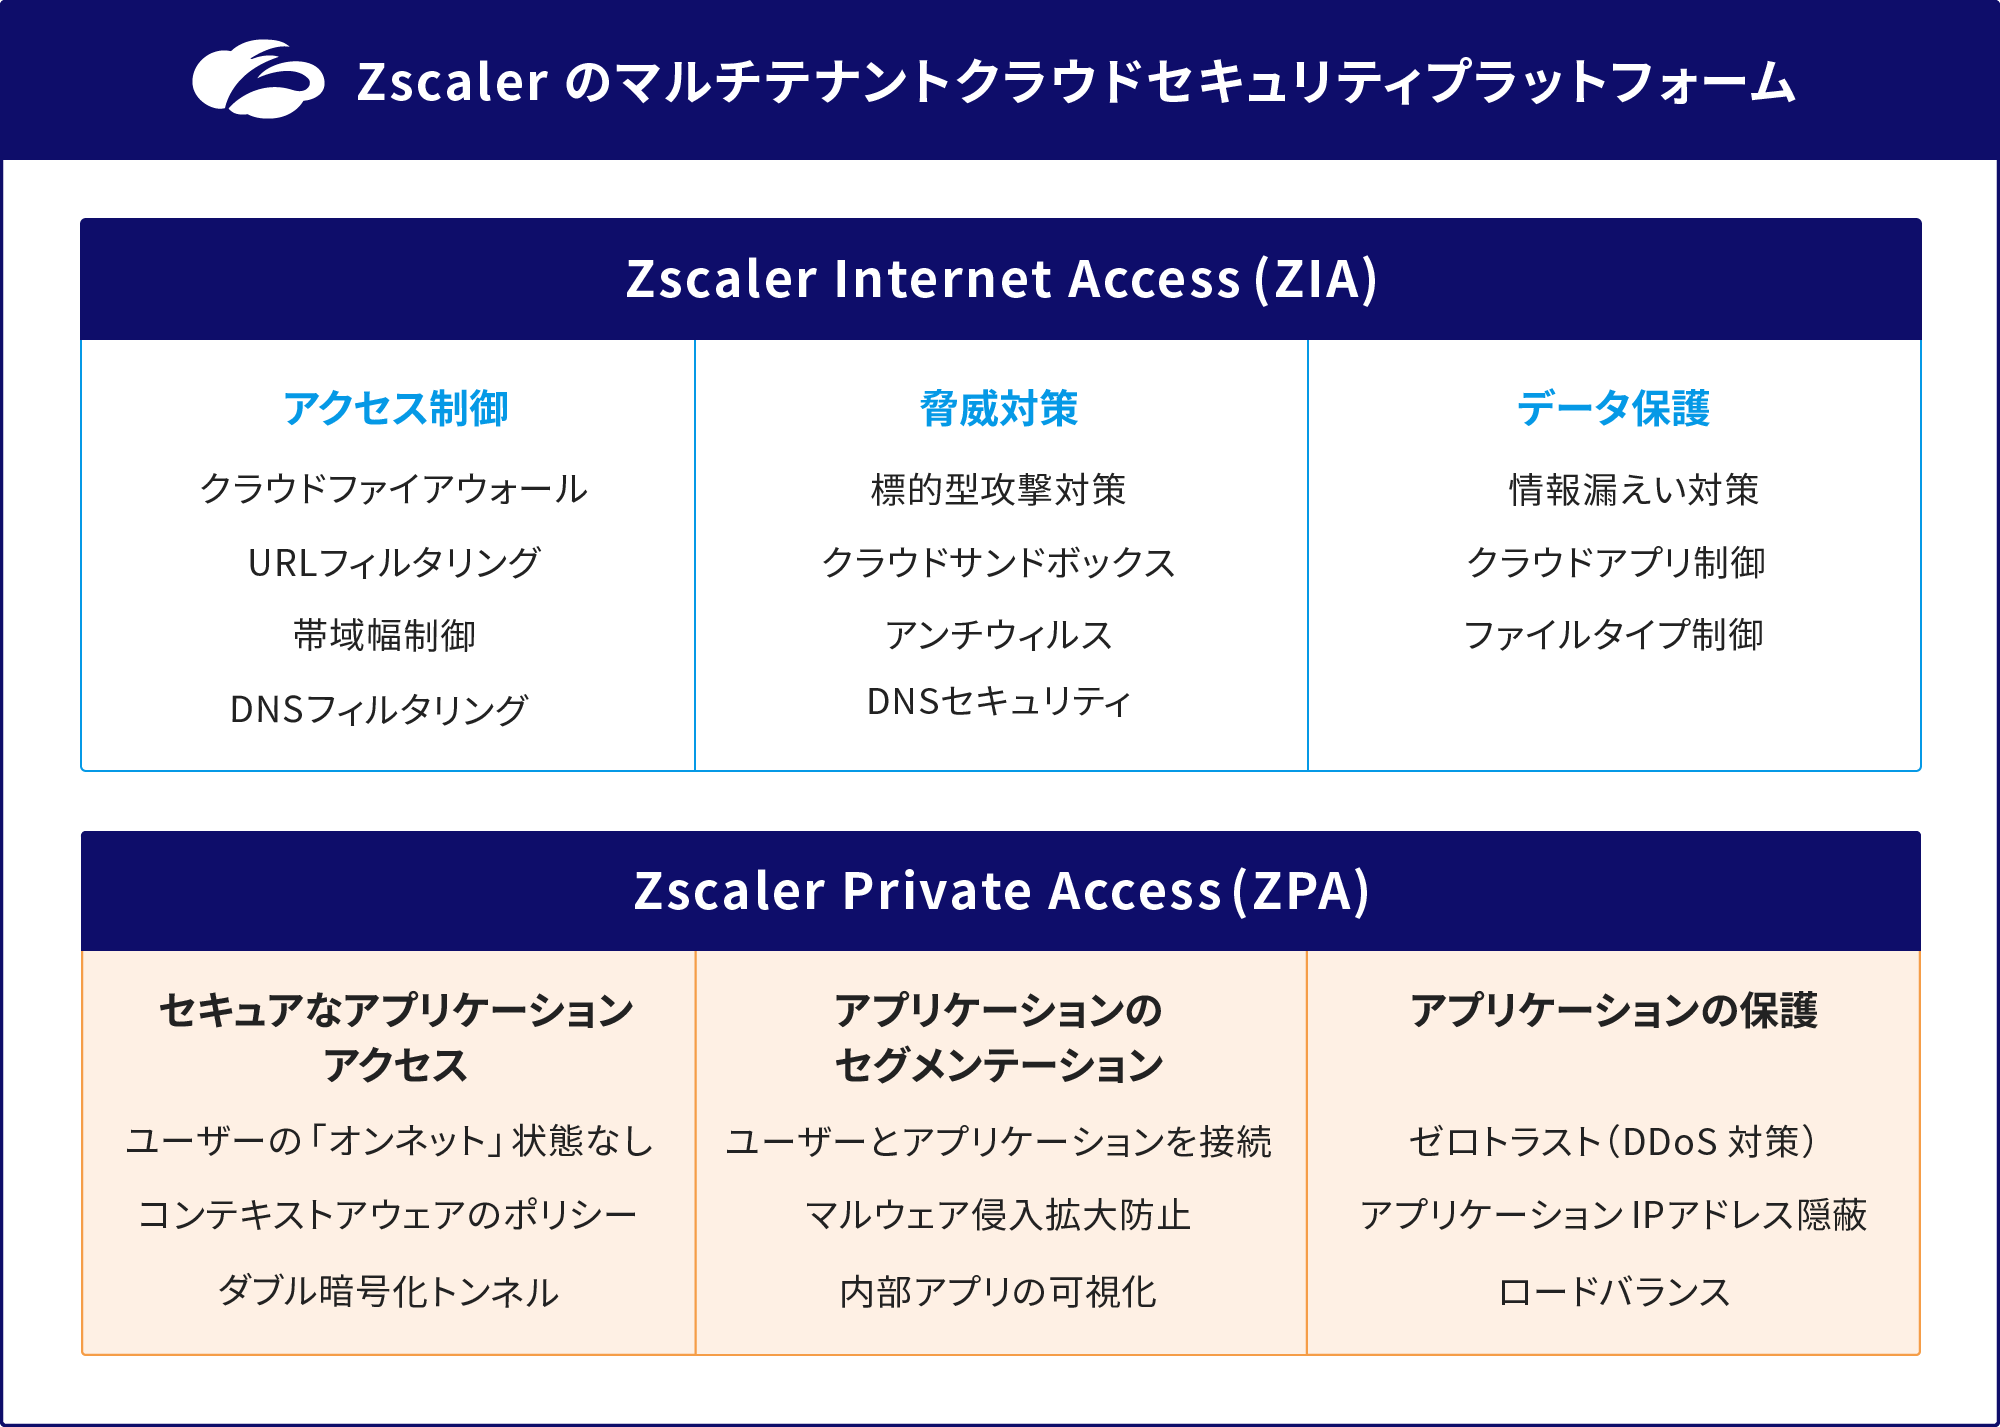 Zscalerのマルチテナントクラウドセキュリティプラットフォームでは、Zscaler Internet Access (ZIA) とZscaler Private Access (ZPA) を同時に利用できます。ZIAはアクセス制御、脅威対策、データ保護を提供し、ユーザーのインターネットアクセスをセキュアにします。ZPAはセキュアなアプリケーションアクセスを提供し、外部からのマルウェア侵入を防ぎ、アプリケーションの保護を強化します。